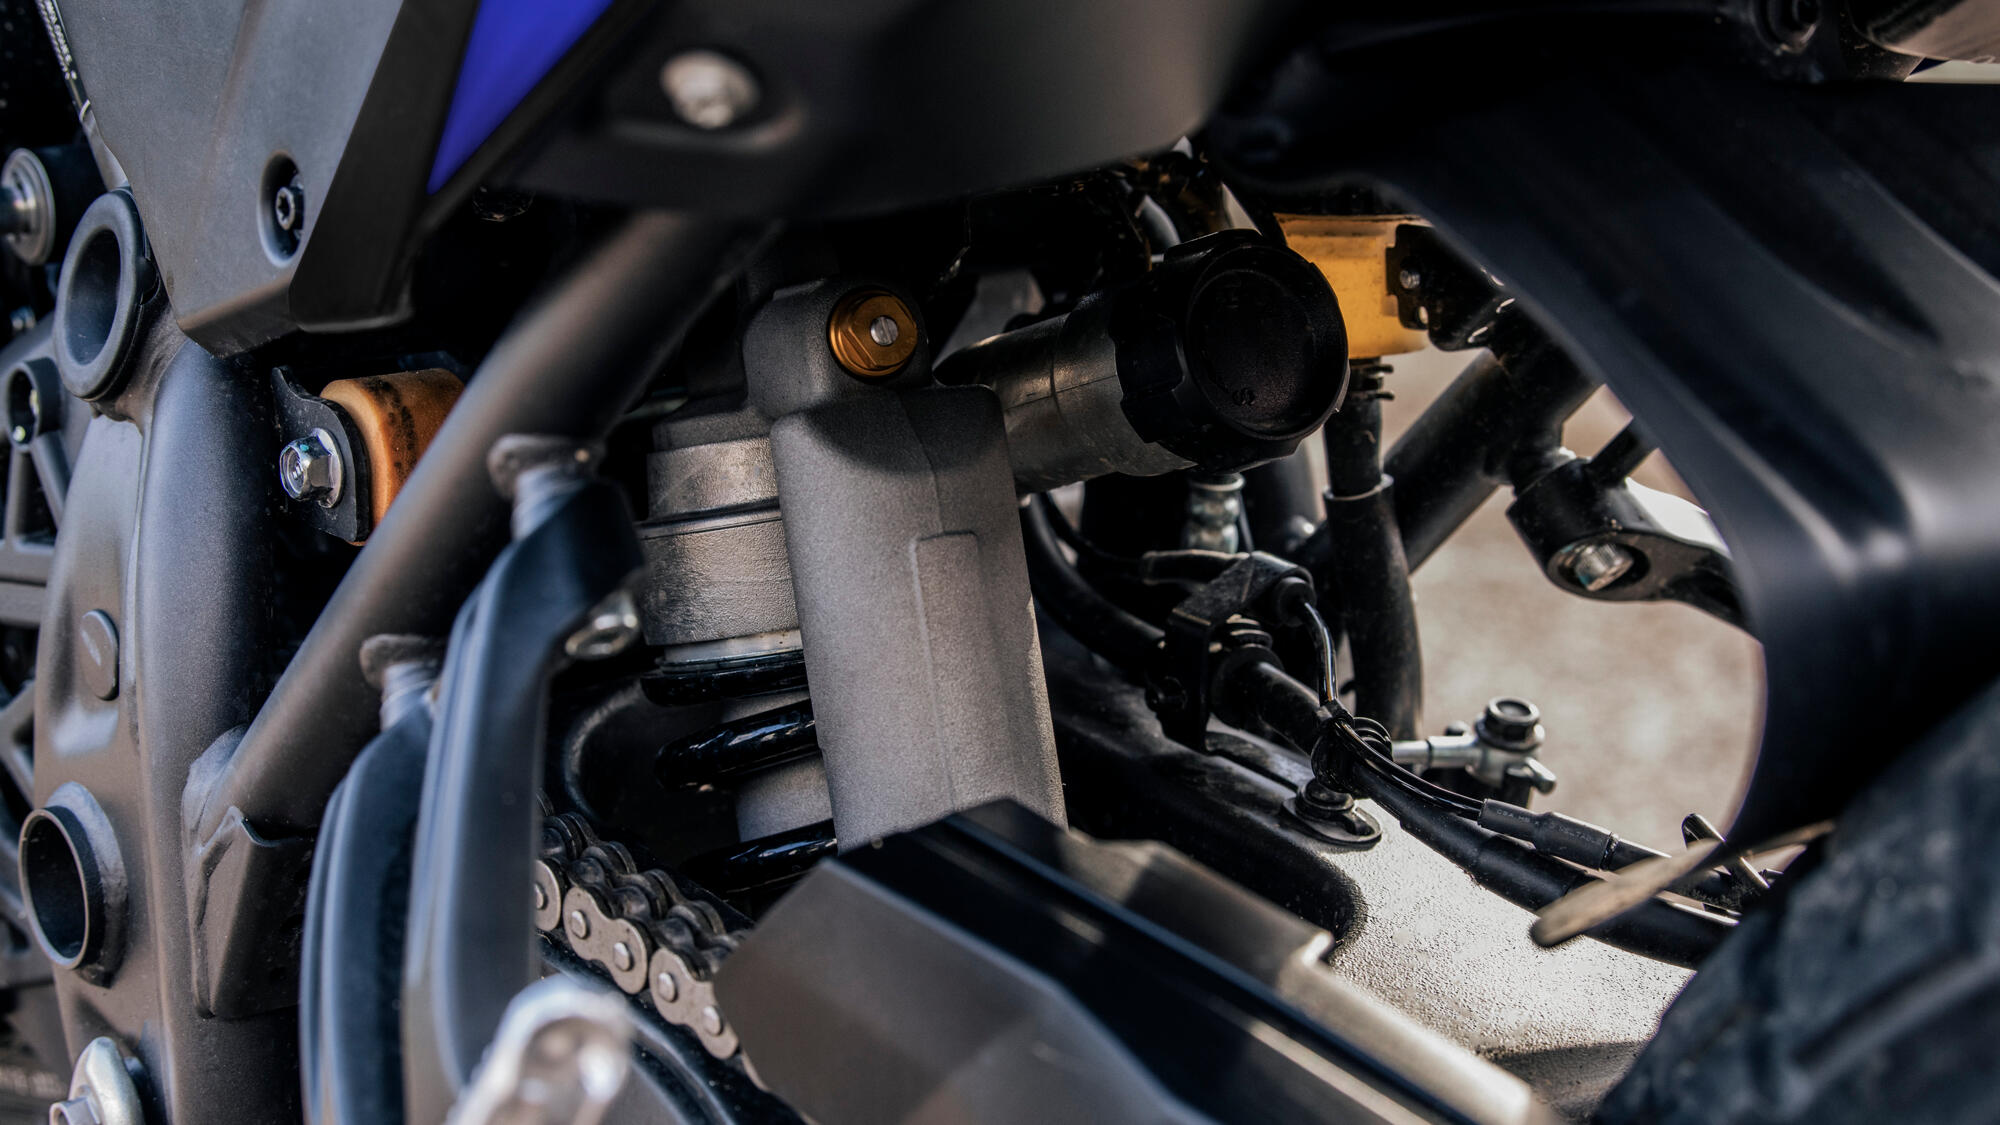 Vista cercana del sistema de suspensión de la Yamaha Ténéré 700, enfatizando su robustez.